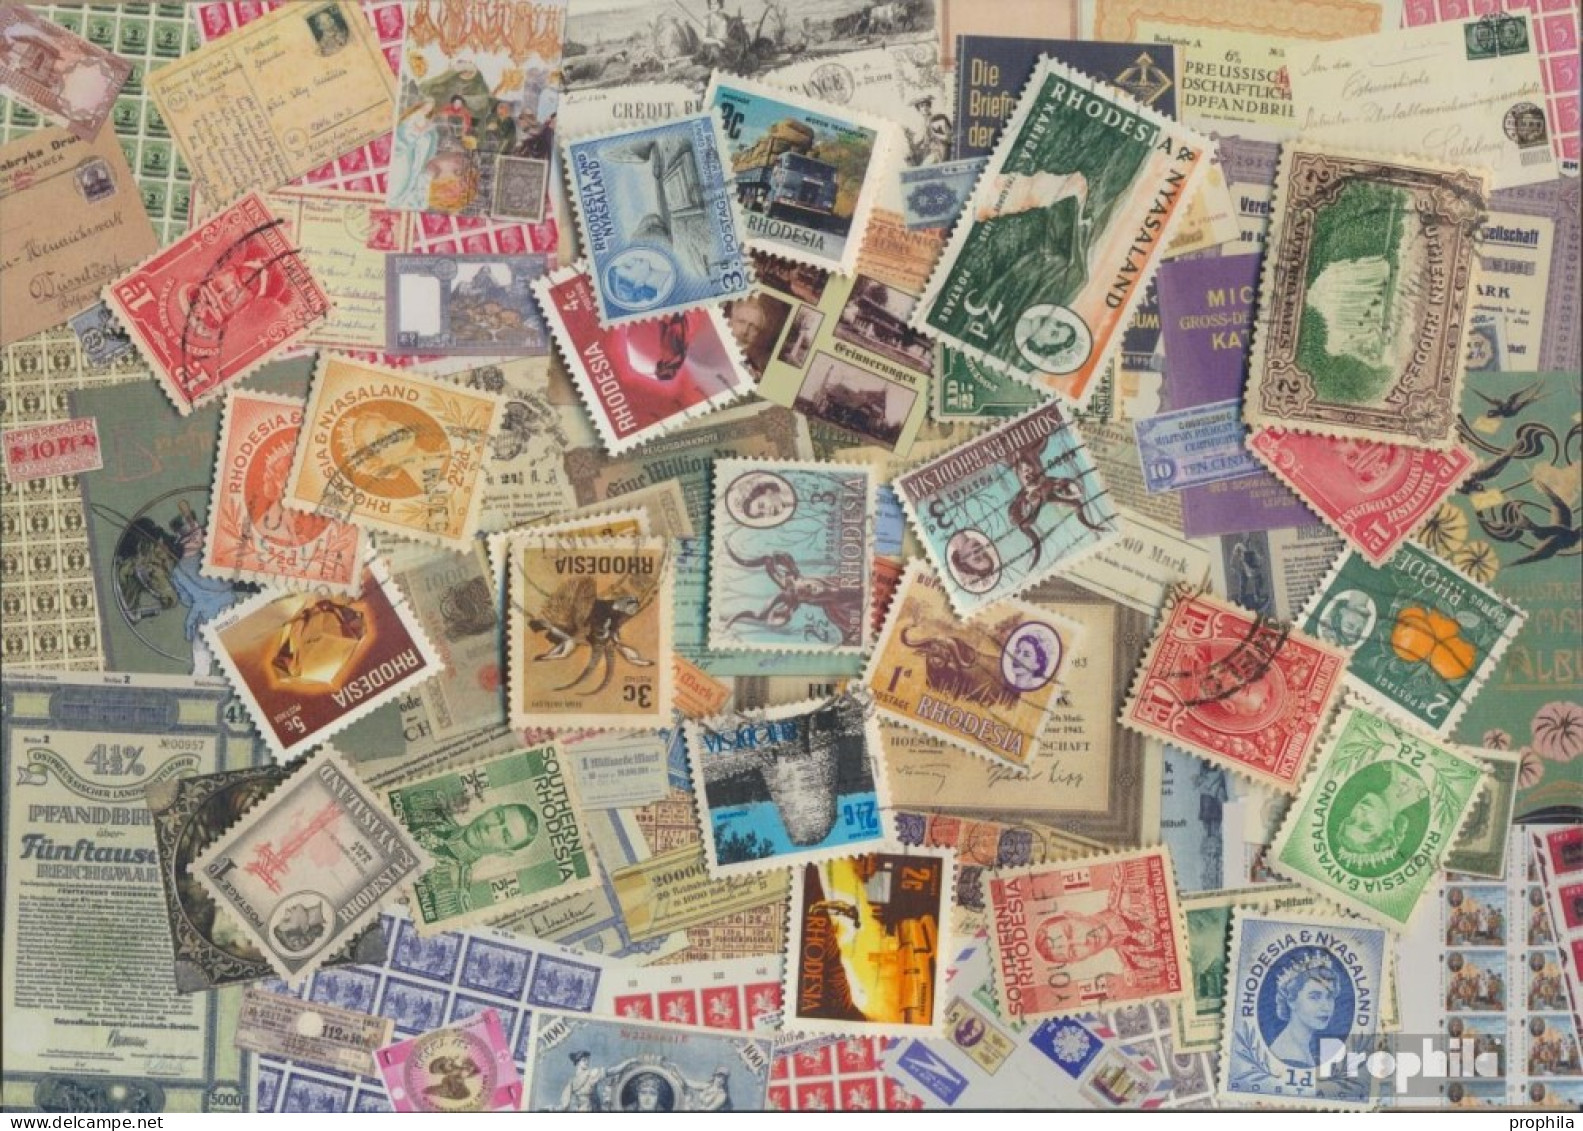 Rhodesien Und Nyassaland Briefmarken-25 Verschiedene Marken - Rhodesia & Nyasaland (1954-1963)